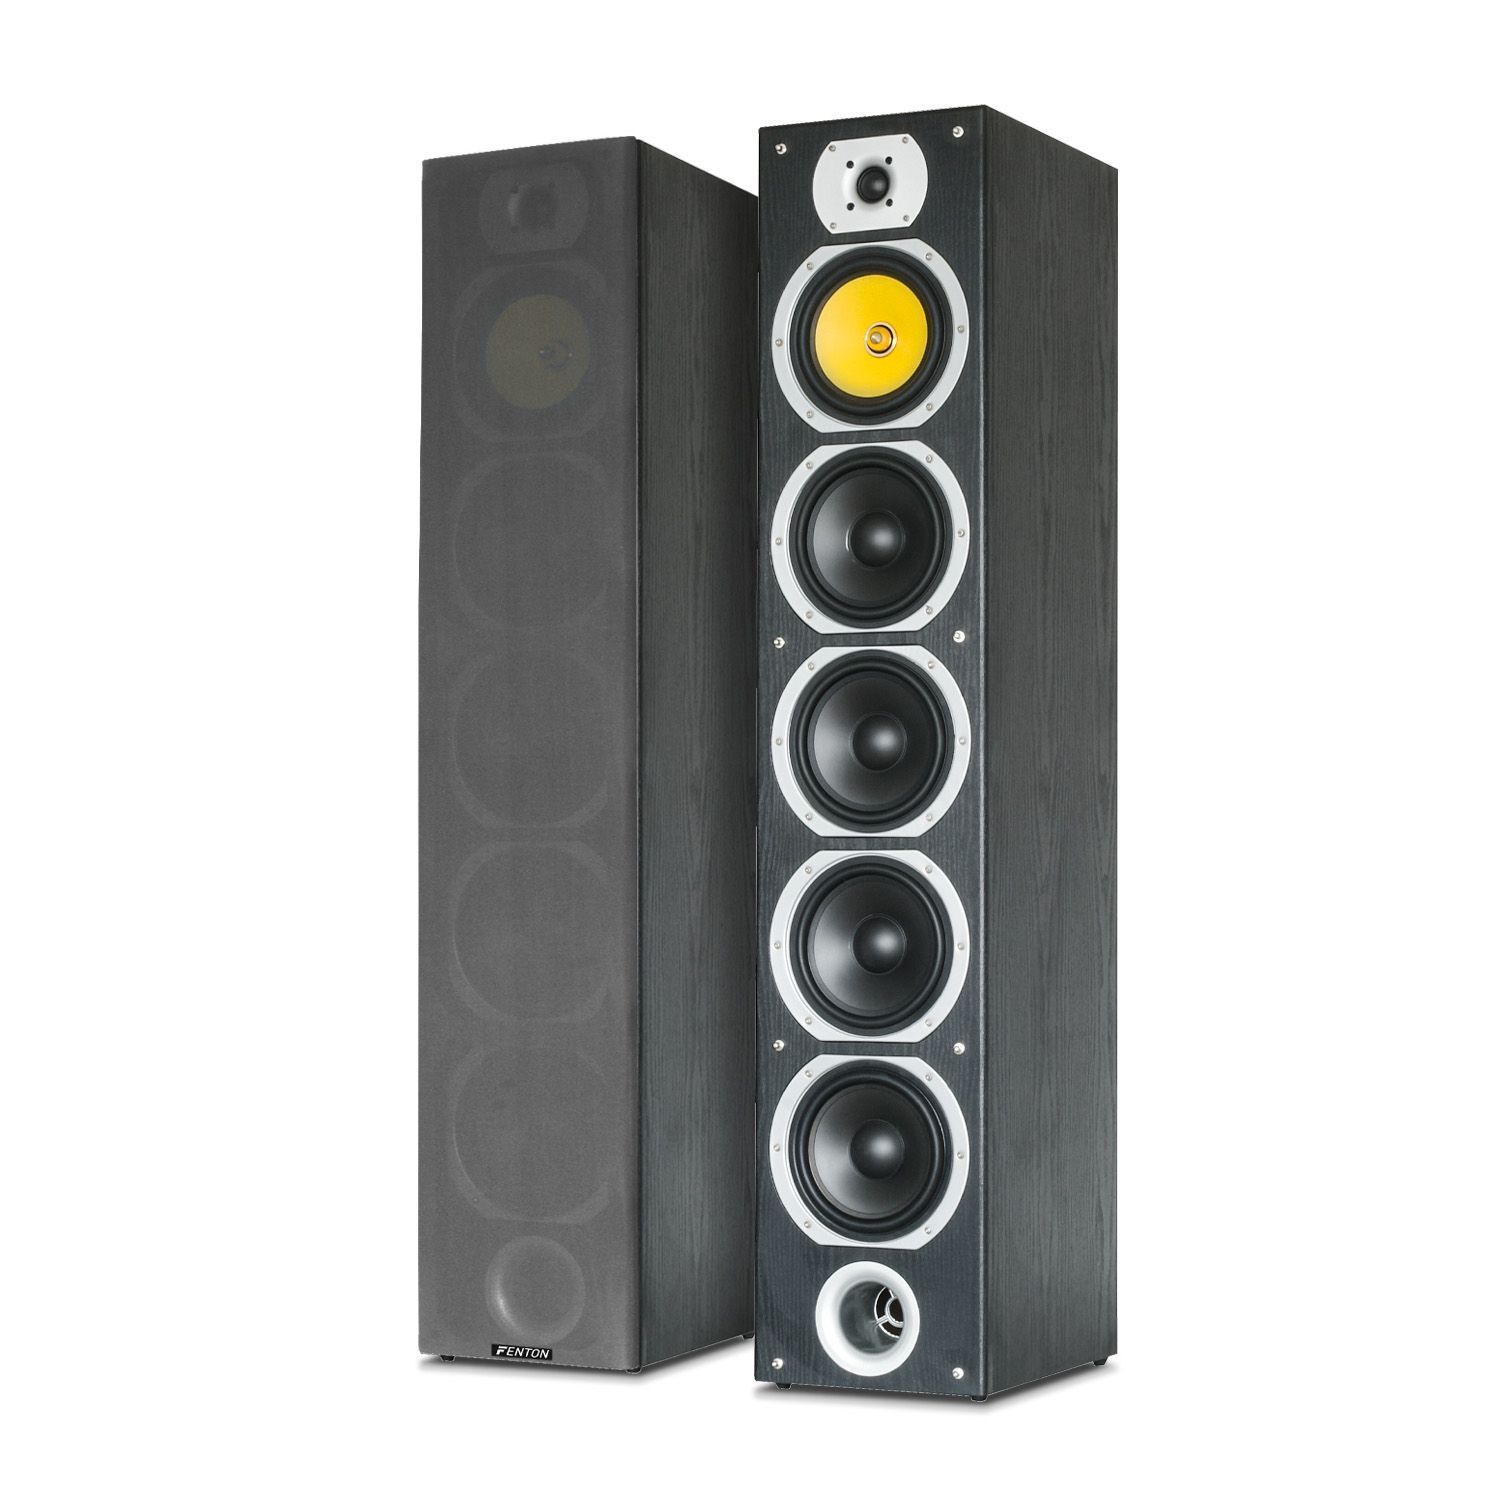 Afkorting Kostuum tijdschrift Fenton SHFT57B hifi speakers - 600W - 4-weg - Set van 2 kopen?